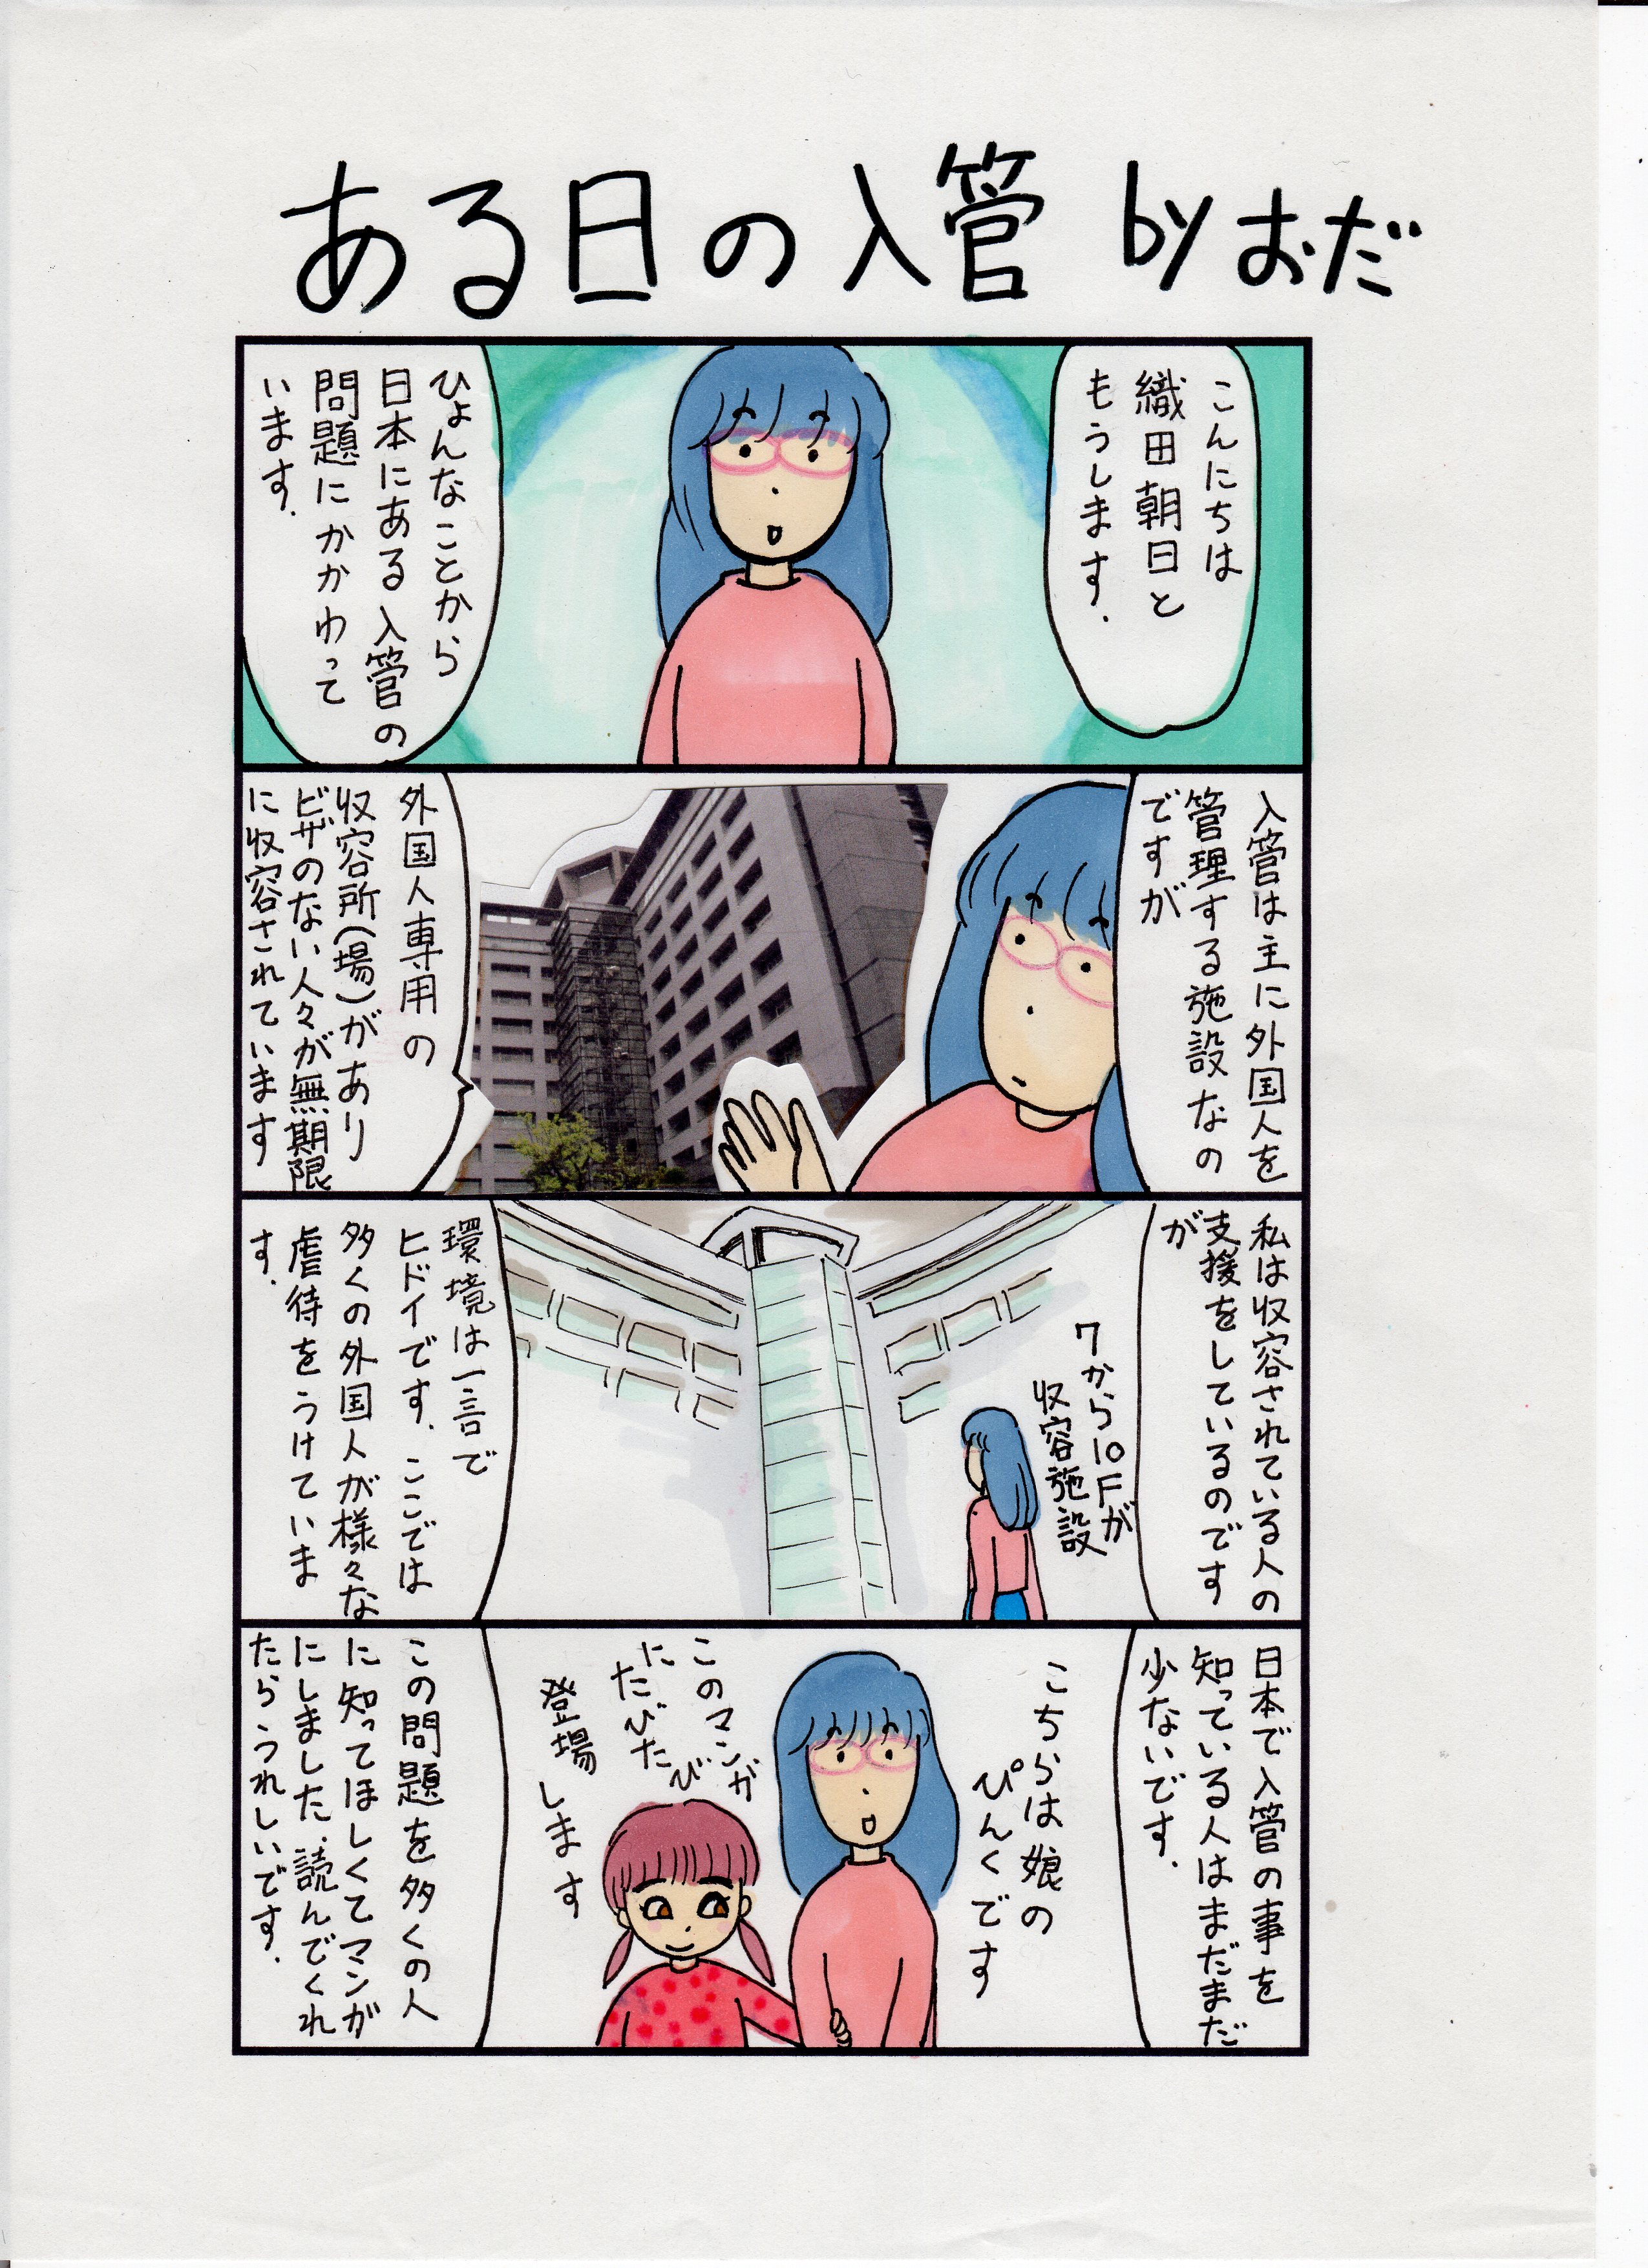 漫画で知る 日本人が知らない 外国人虐待を行う入管の現実 新連載 ある日の入管 ハーバー ビジネス オンライン